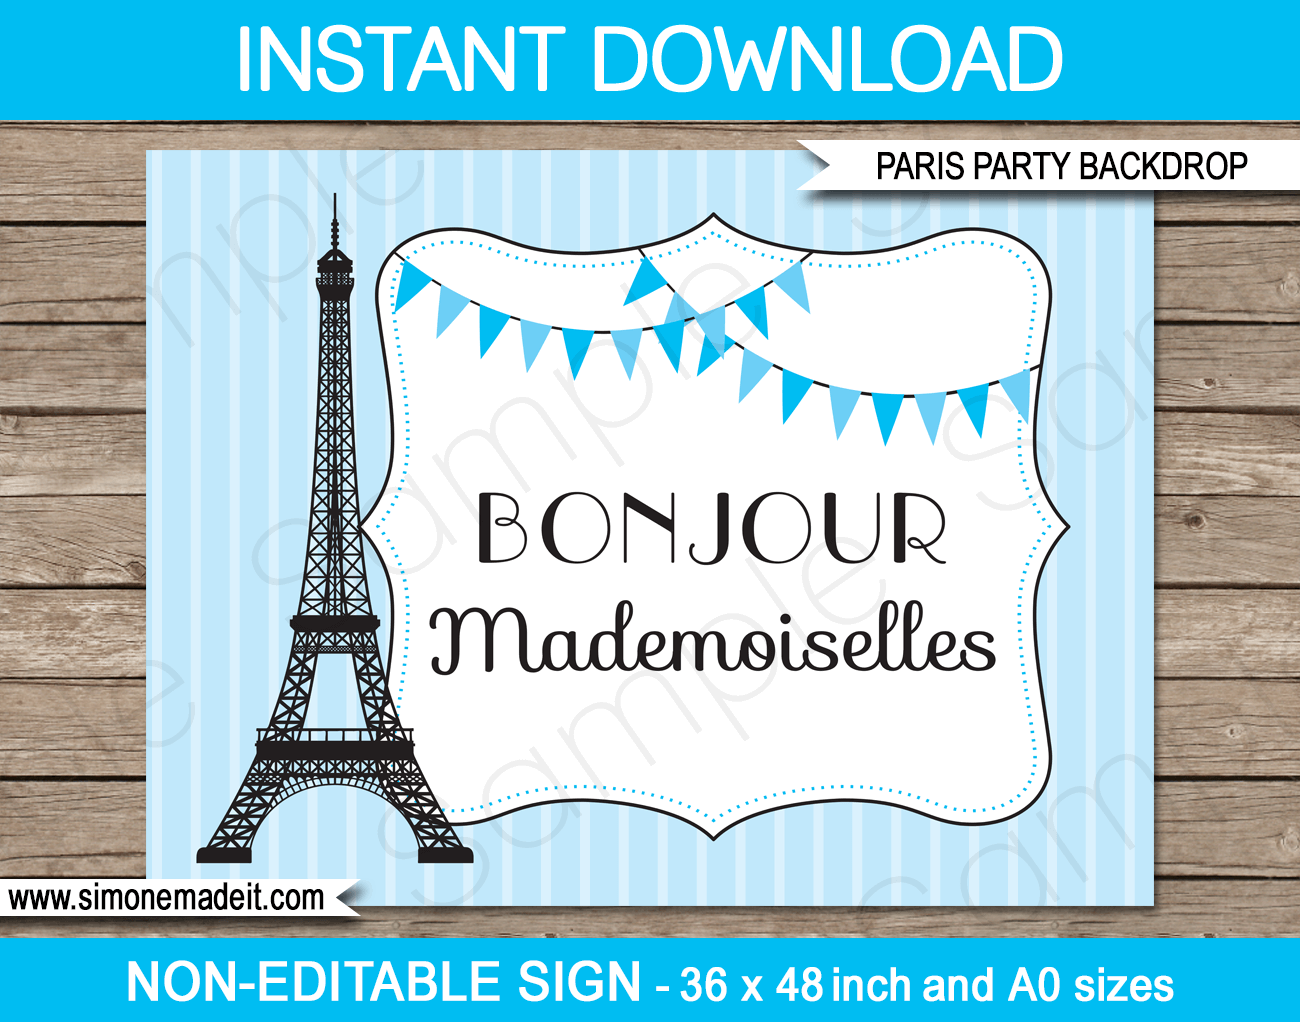 Blue Paris Party Backdrop - Bonjour Mademoiselles | Printable DIY Template | Party Decorations | 36x48 inches | A0 | $4.50 Instant Download via SIMONEmadeit.com